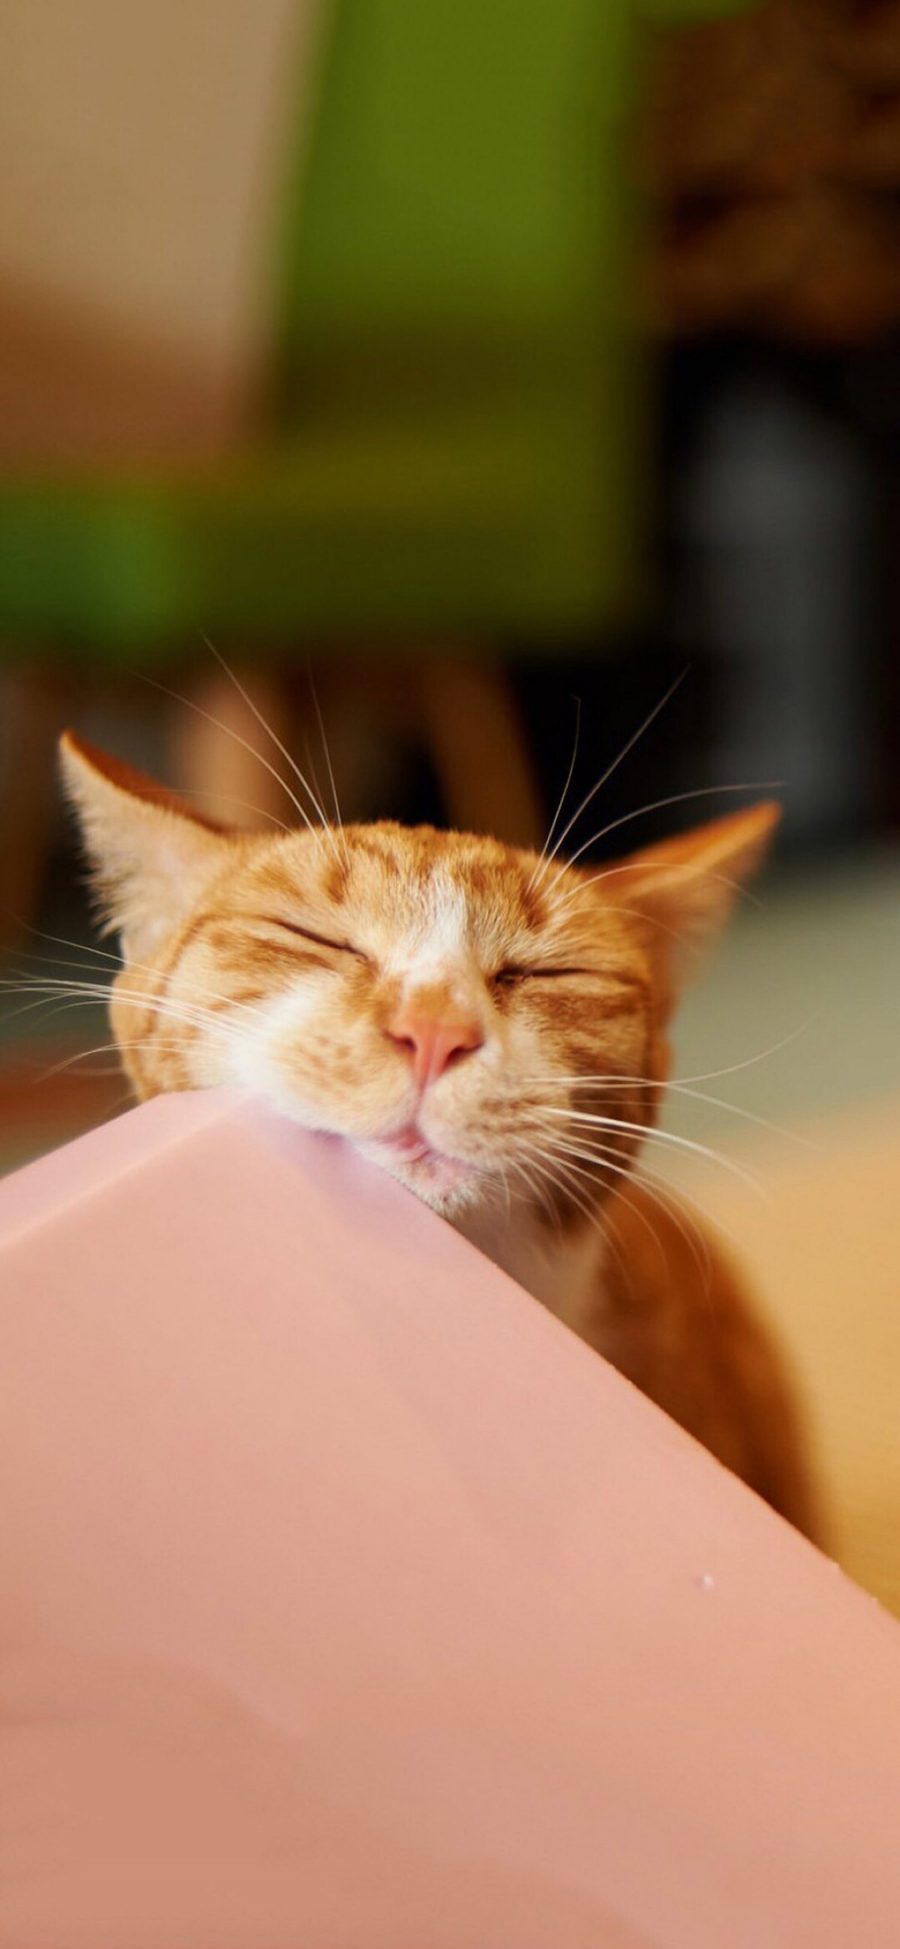 [2436×1125]宠物猫 喵星人 橘猫 睡觉 苹果手机壁纸图片